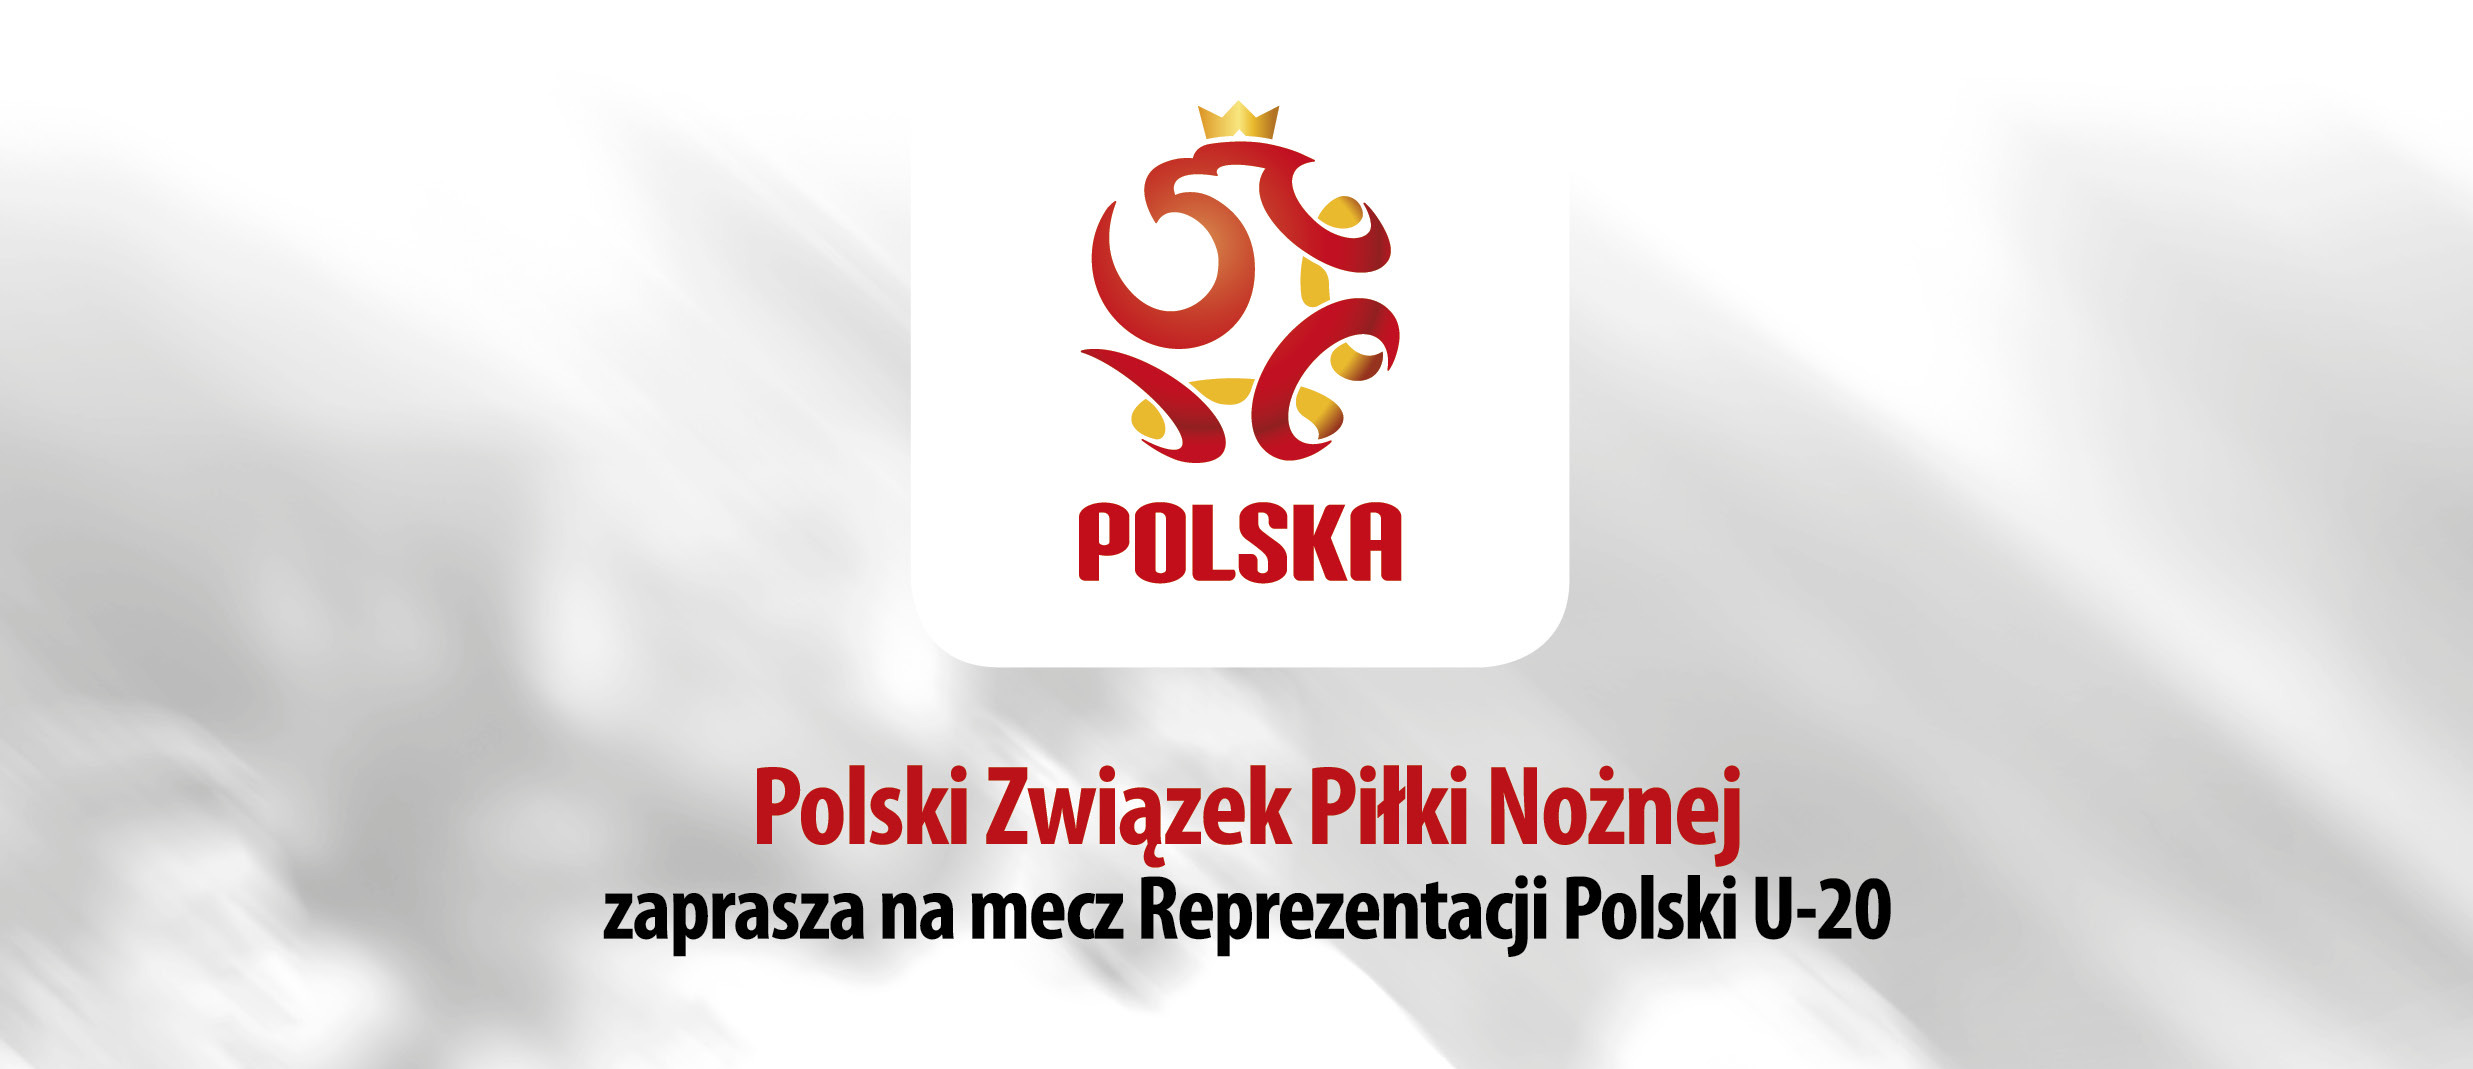 U-20 Polska vs. Włochy 9 października w Lublinie - Spotted Lublin - najnowsze wiadomości z Lublina